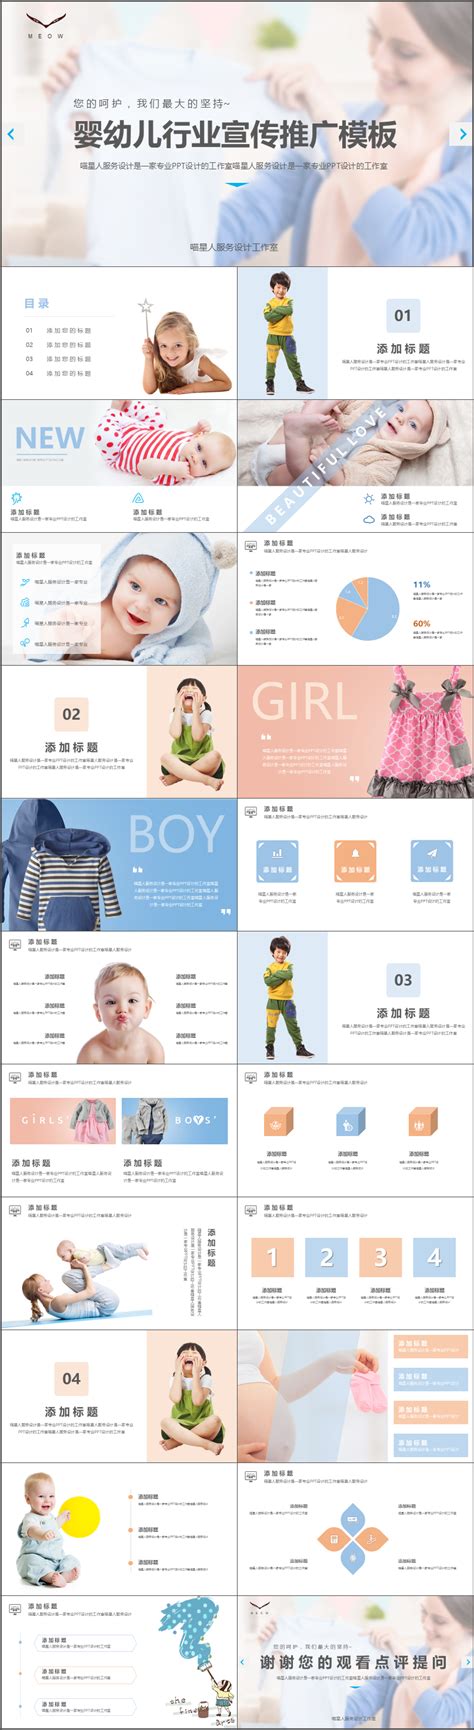 中国婴童网-做母婴专业人士每天都在用的平台